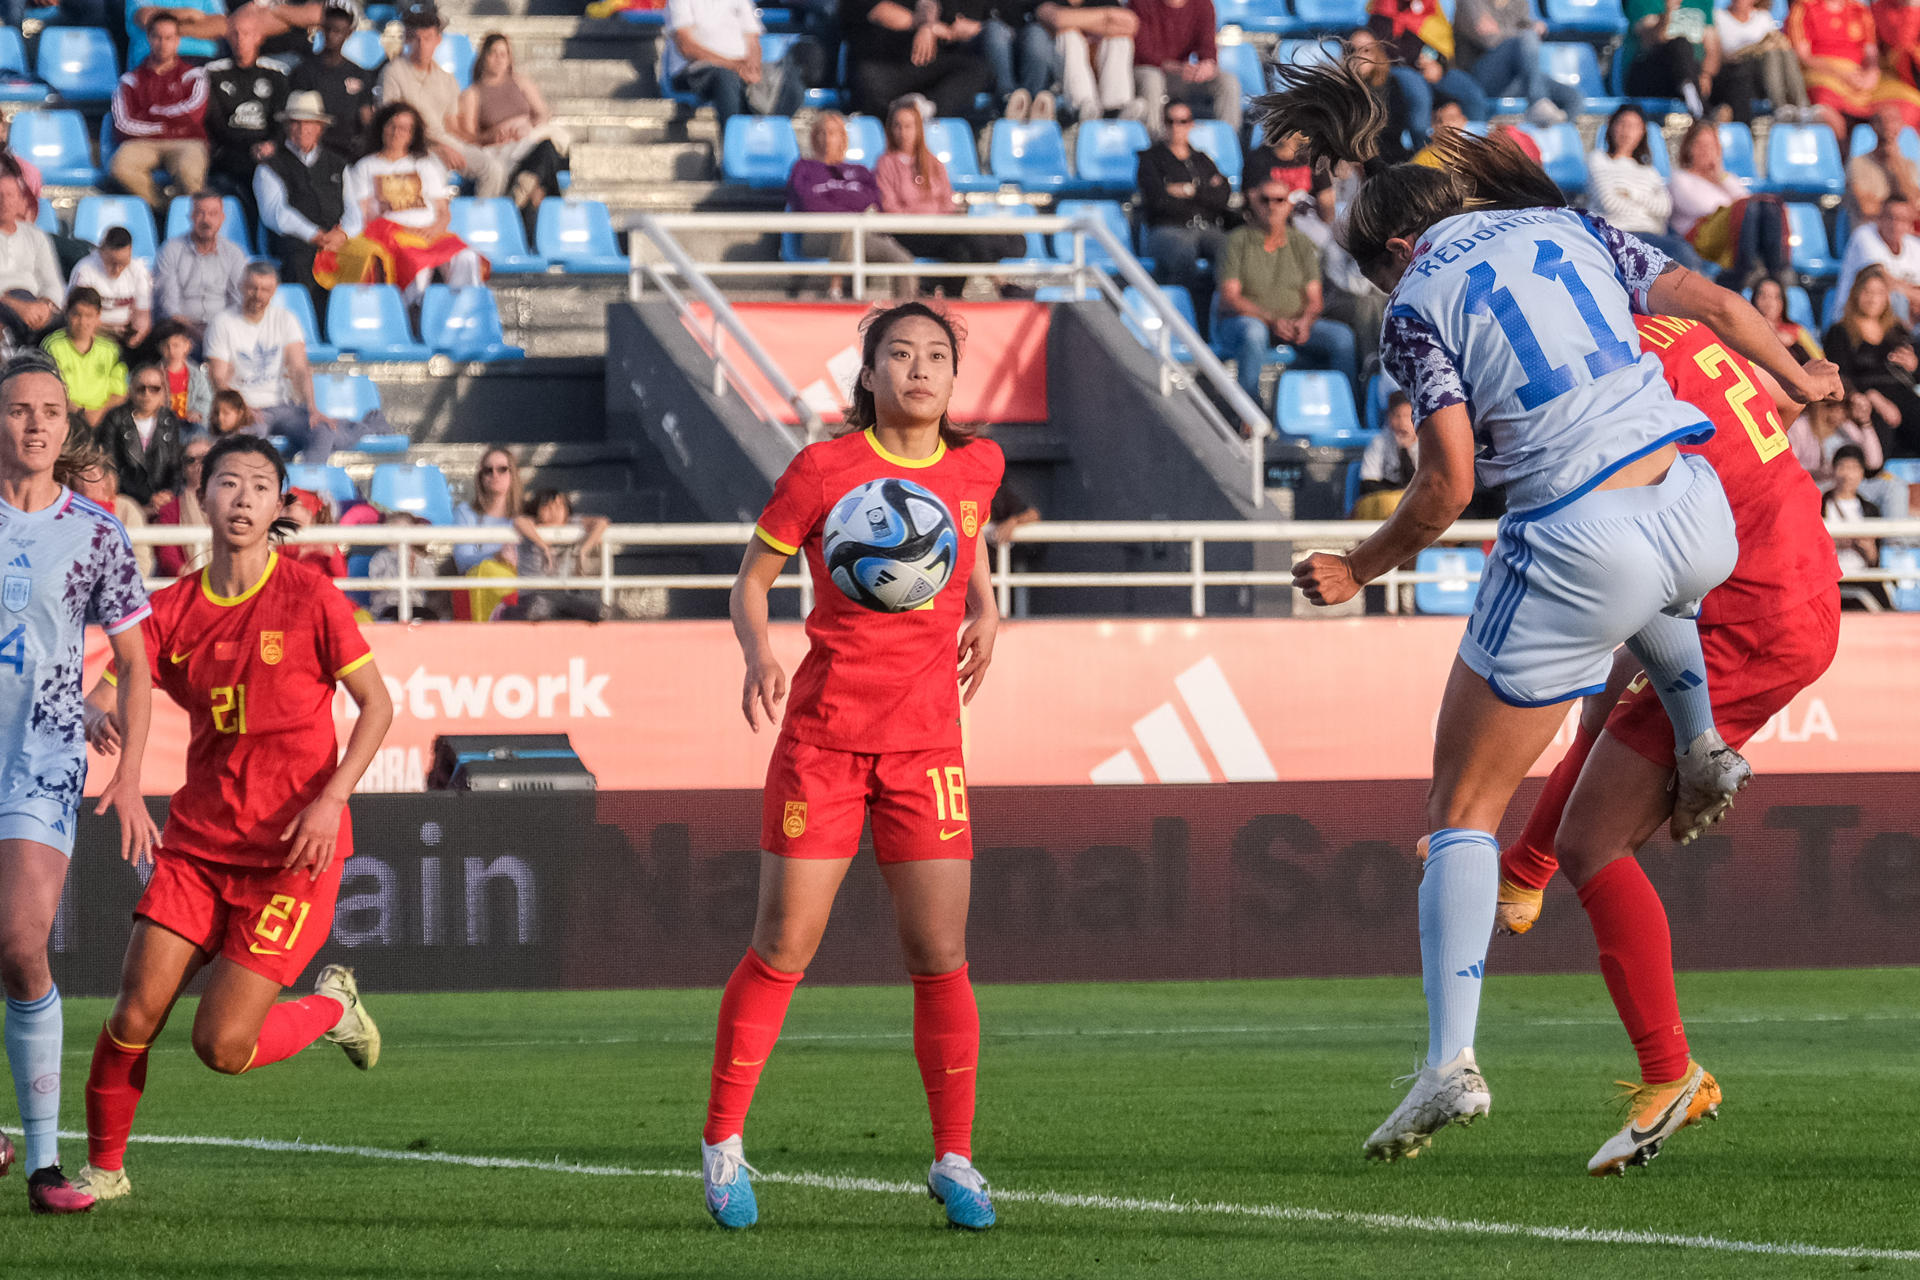 La delantera de la selección española Alba Redondo (2-d) cabecea el balón para marcar el 3-0 durante el encuentro amistoso de preparación para el Mundial de fútbol femenino 2023 entre España y China, este martes en el Estadio de Can Misses, en Ibiza. EFE/Sergio G. Cañizares